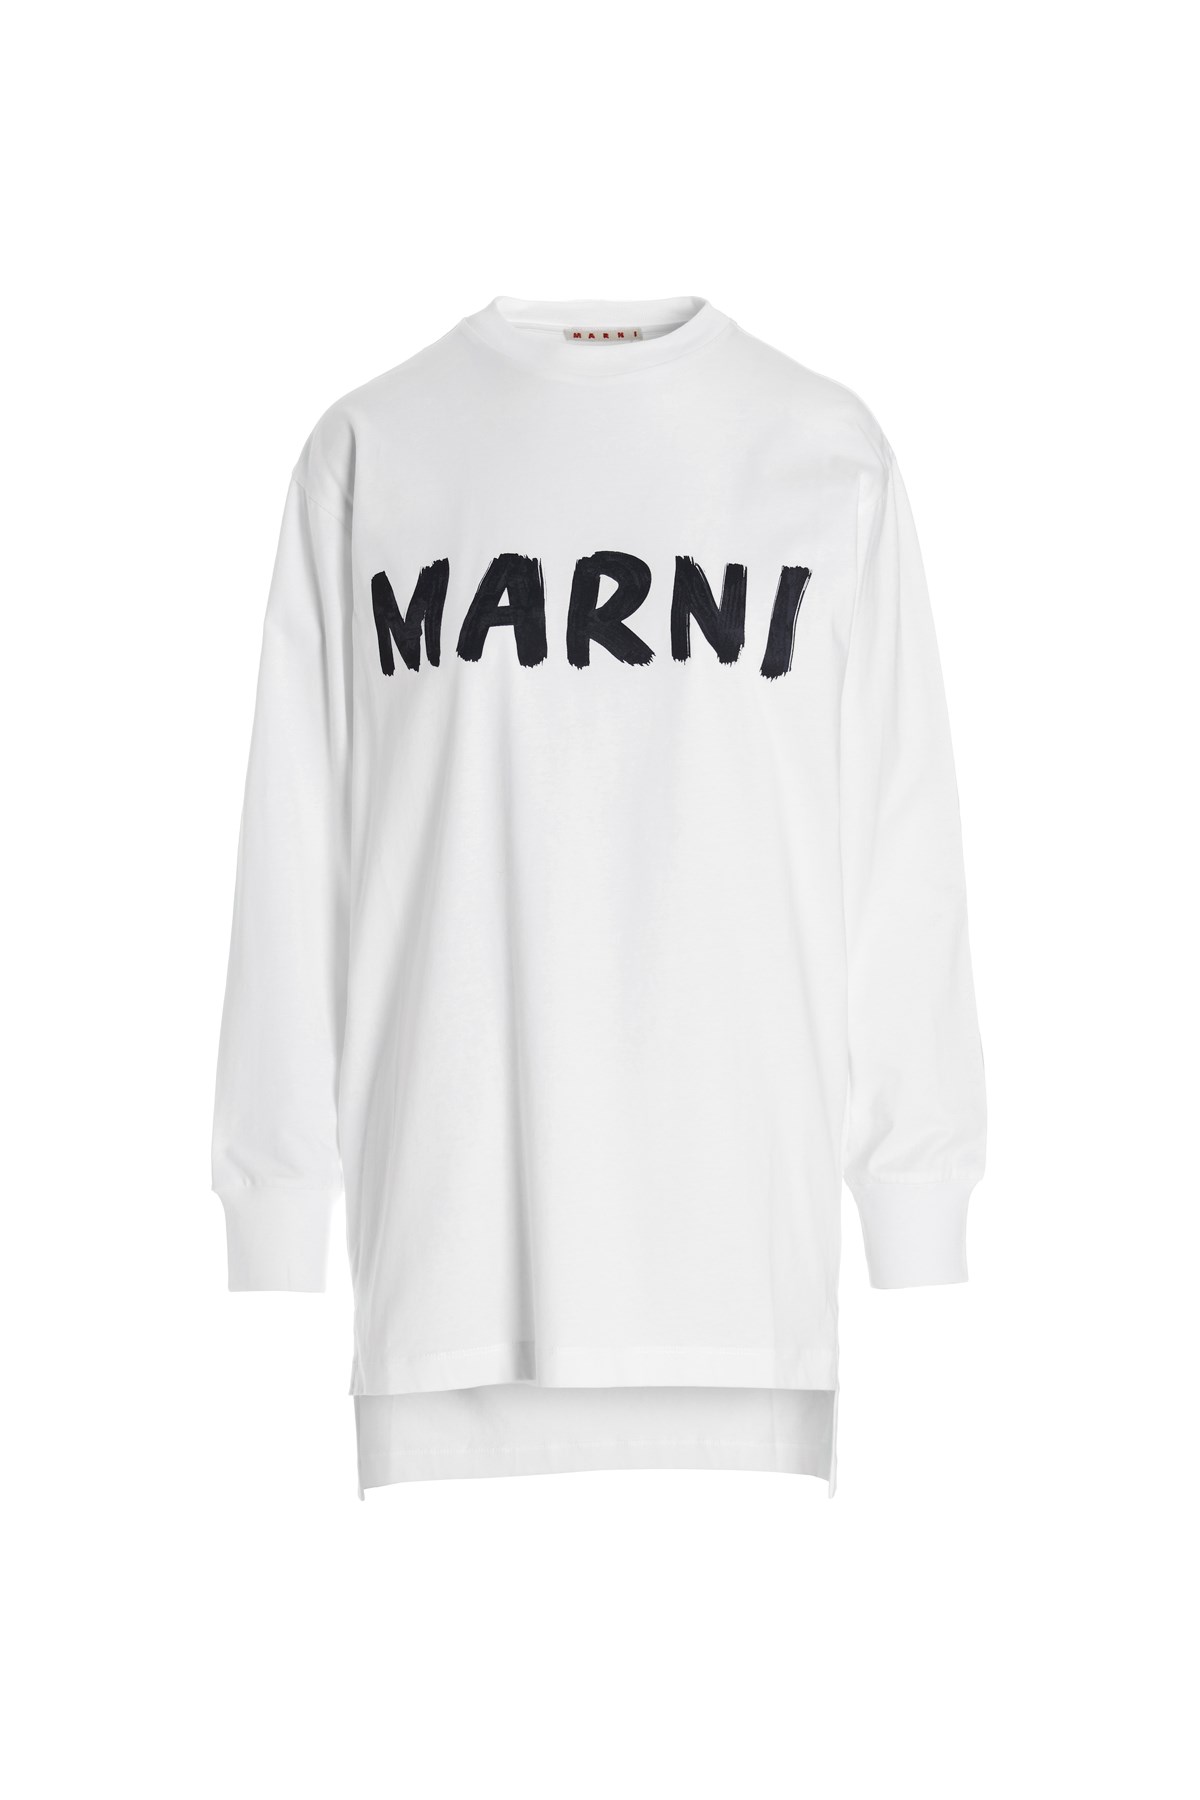 MARNI Logo Printed T-Shirt